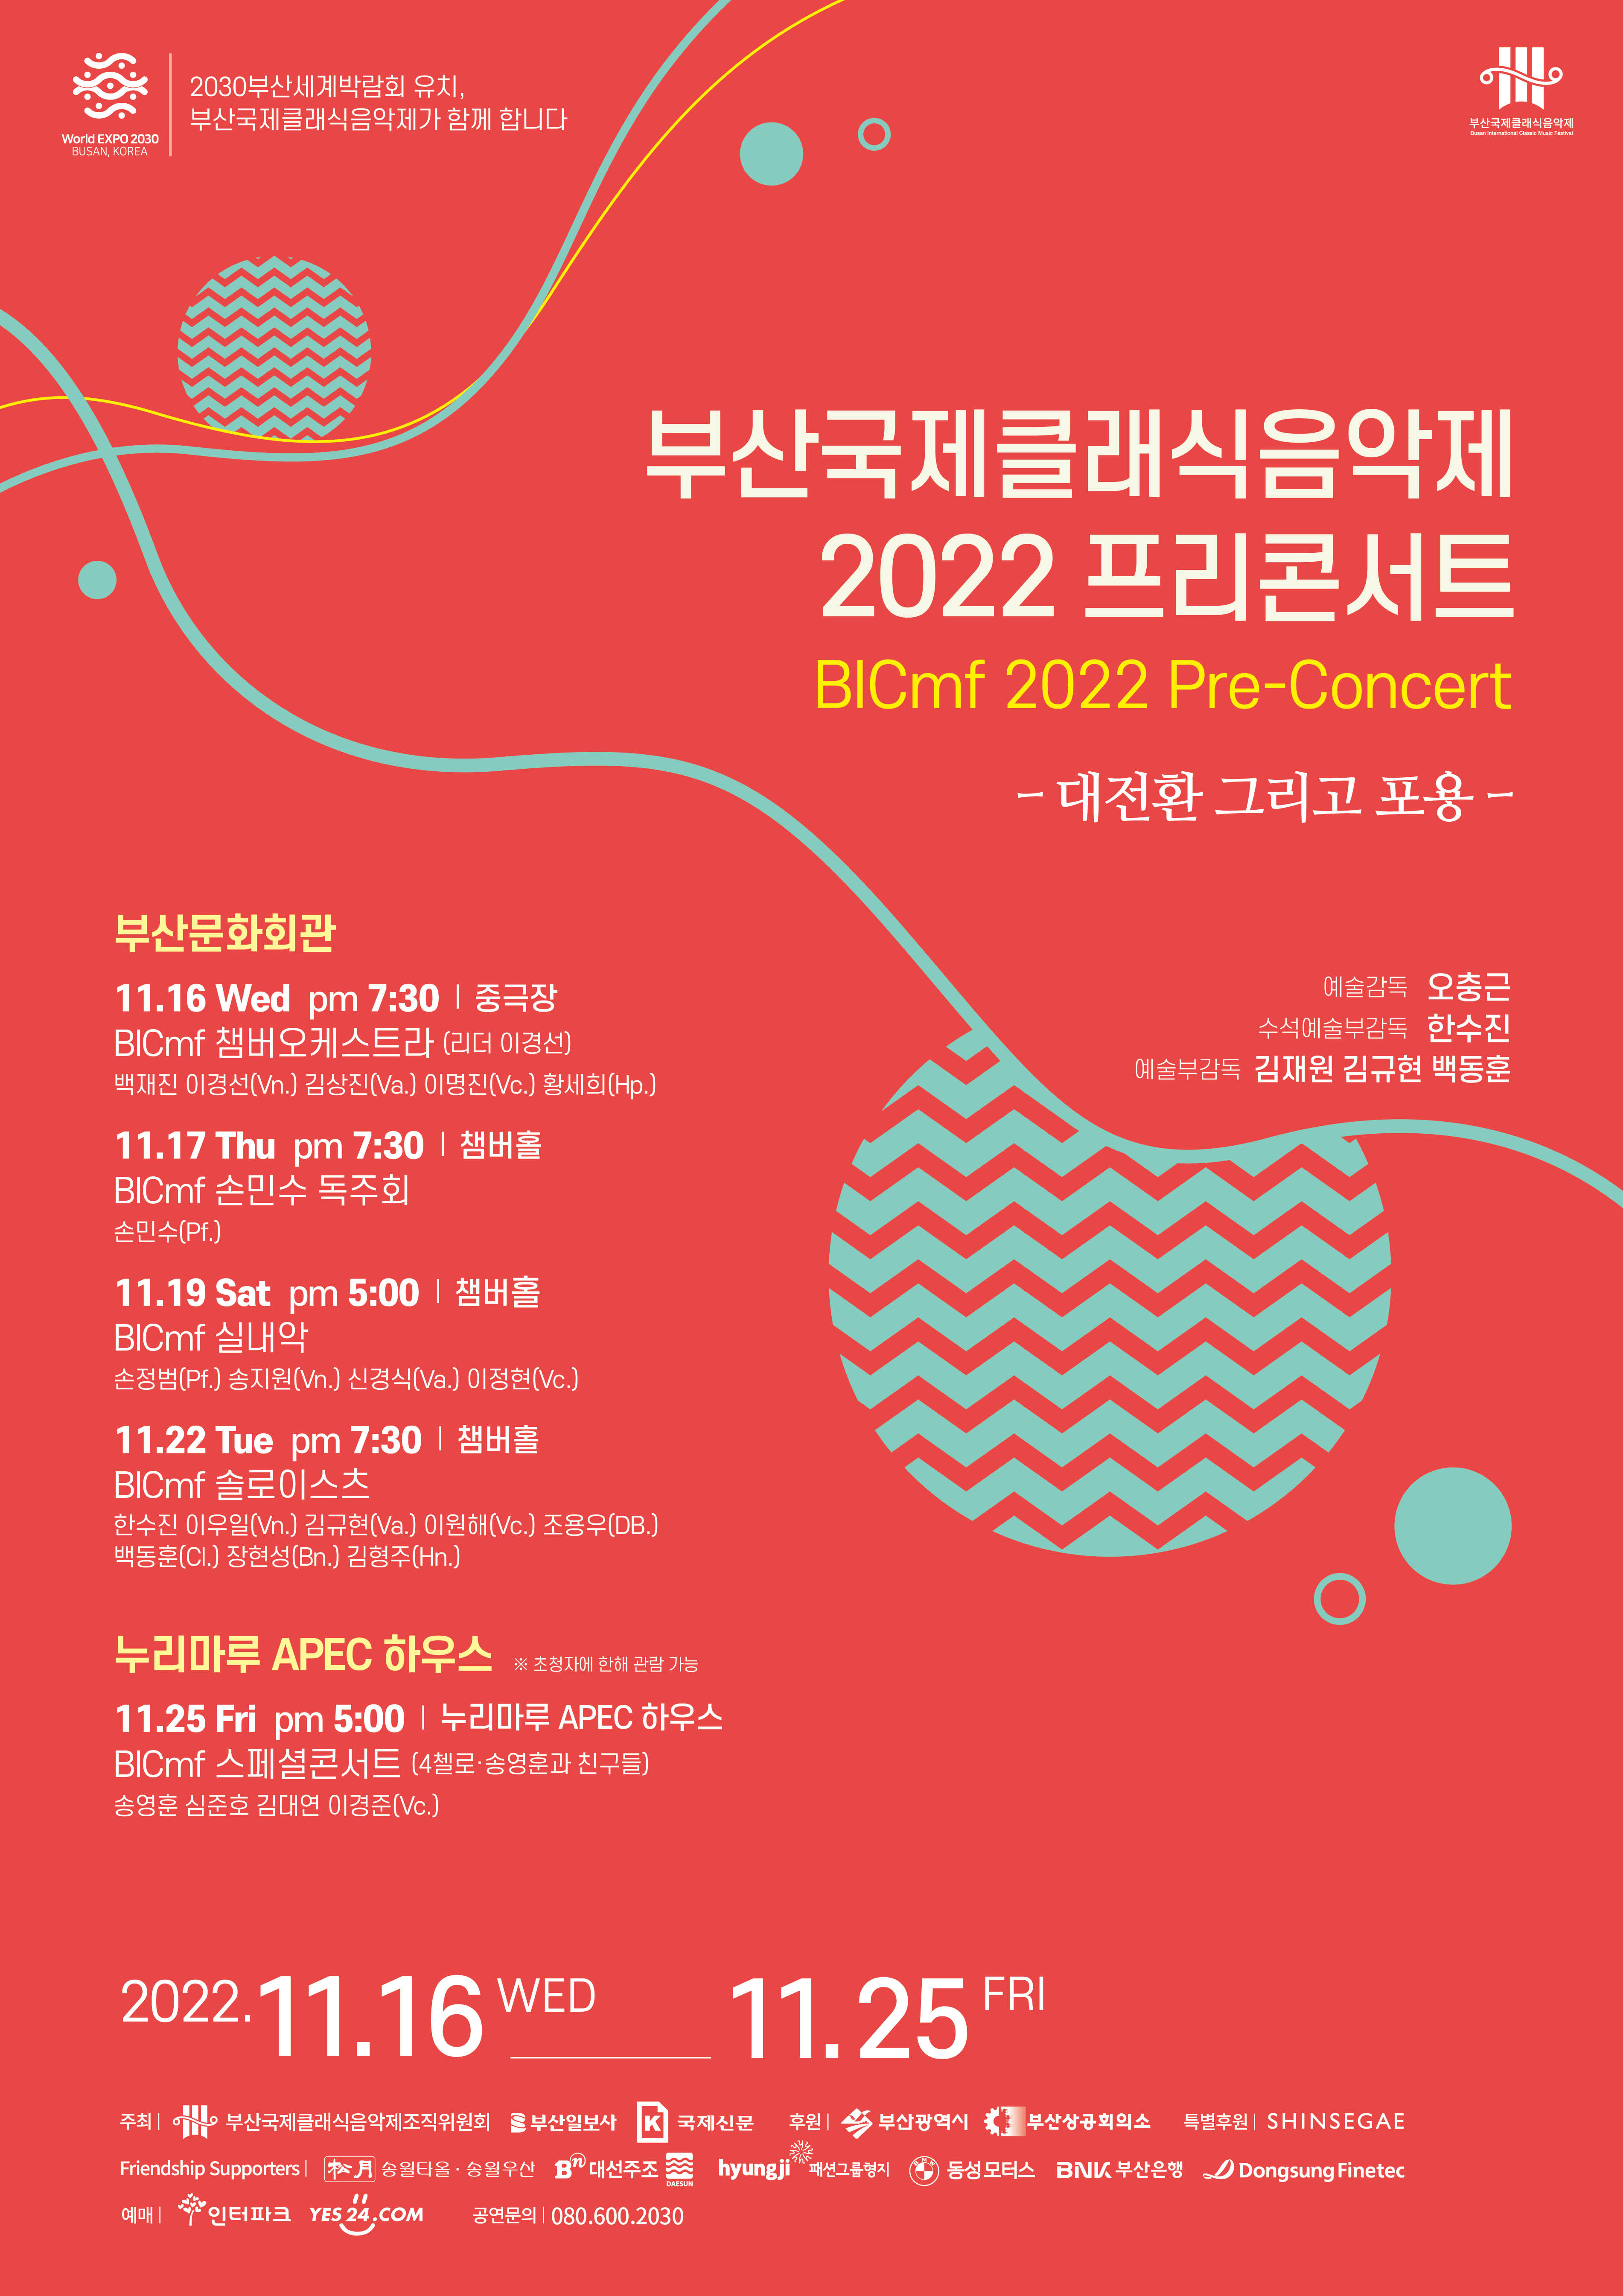 부산국제클래식음악제 2022 Pre-Concert <대전환 그리고 포용> - BICmf챔버오케스트라